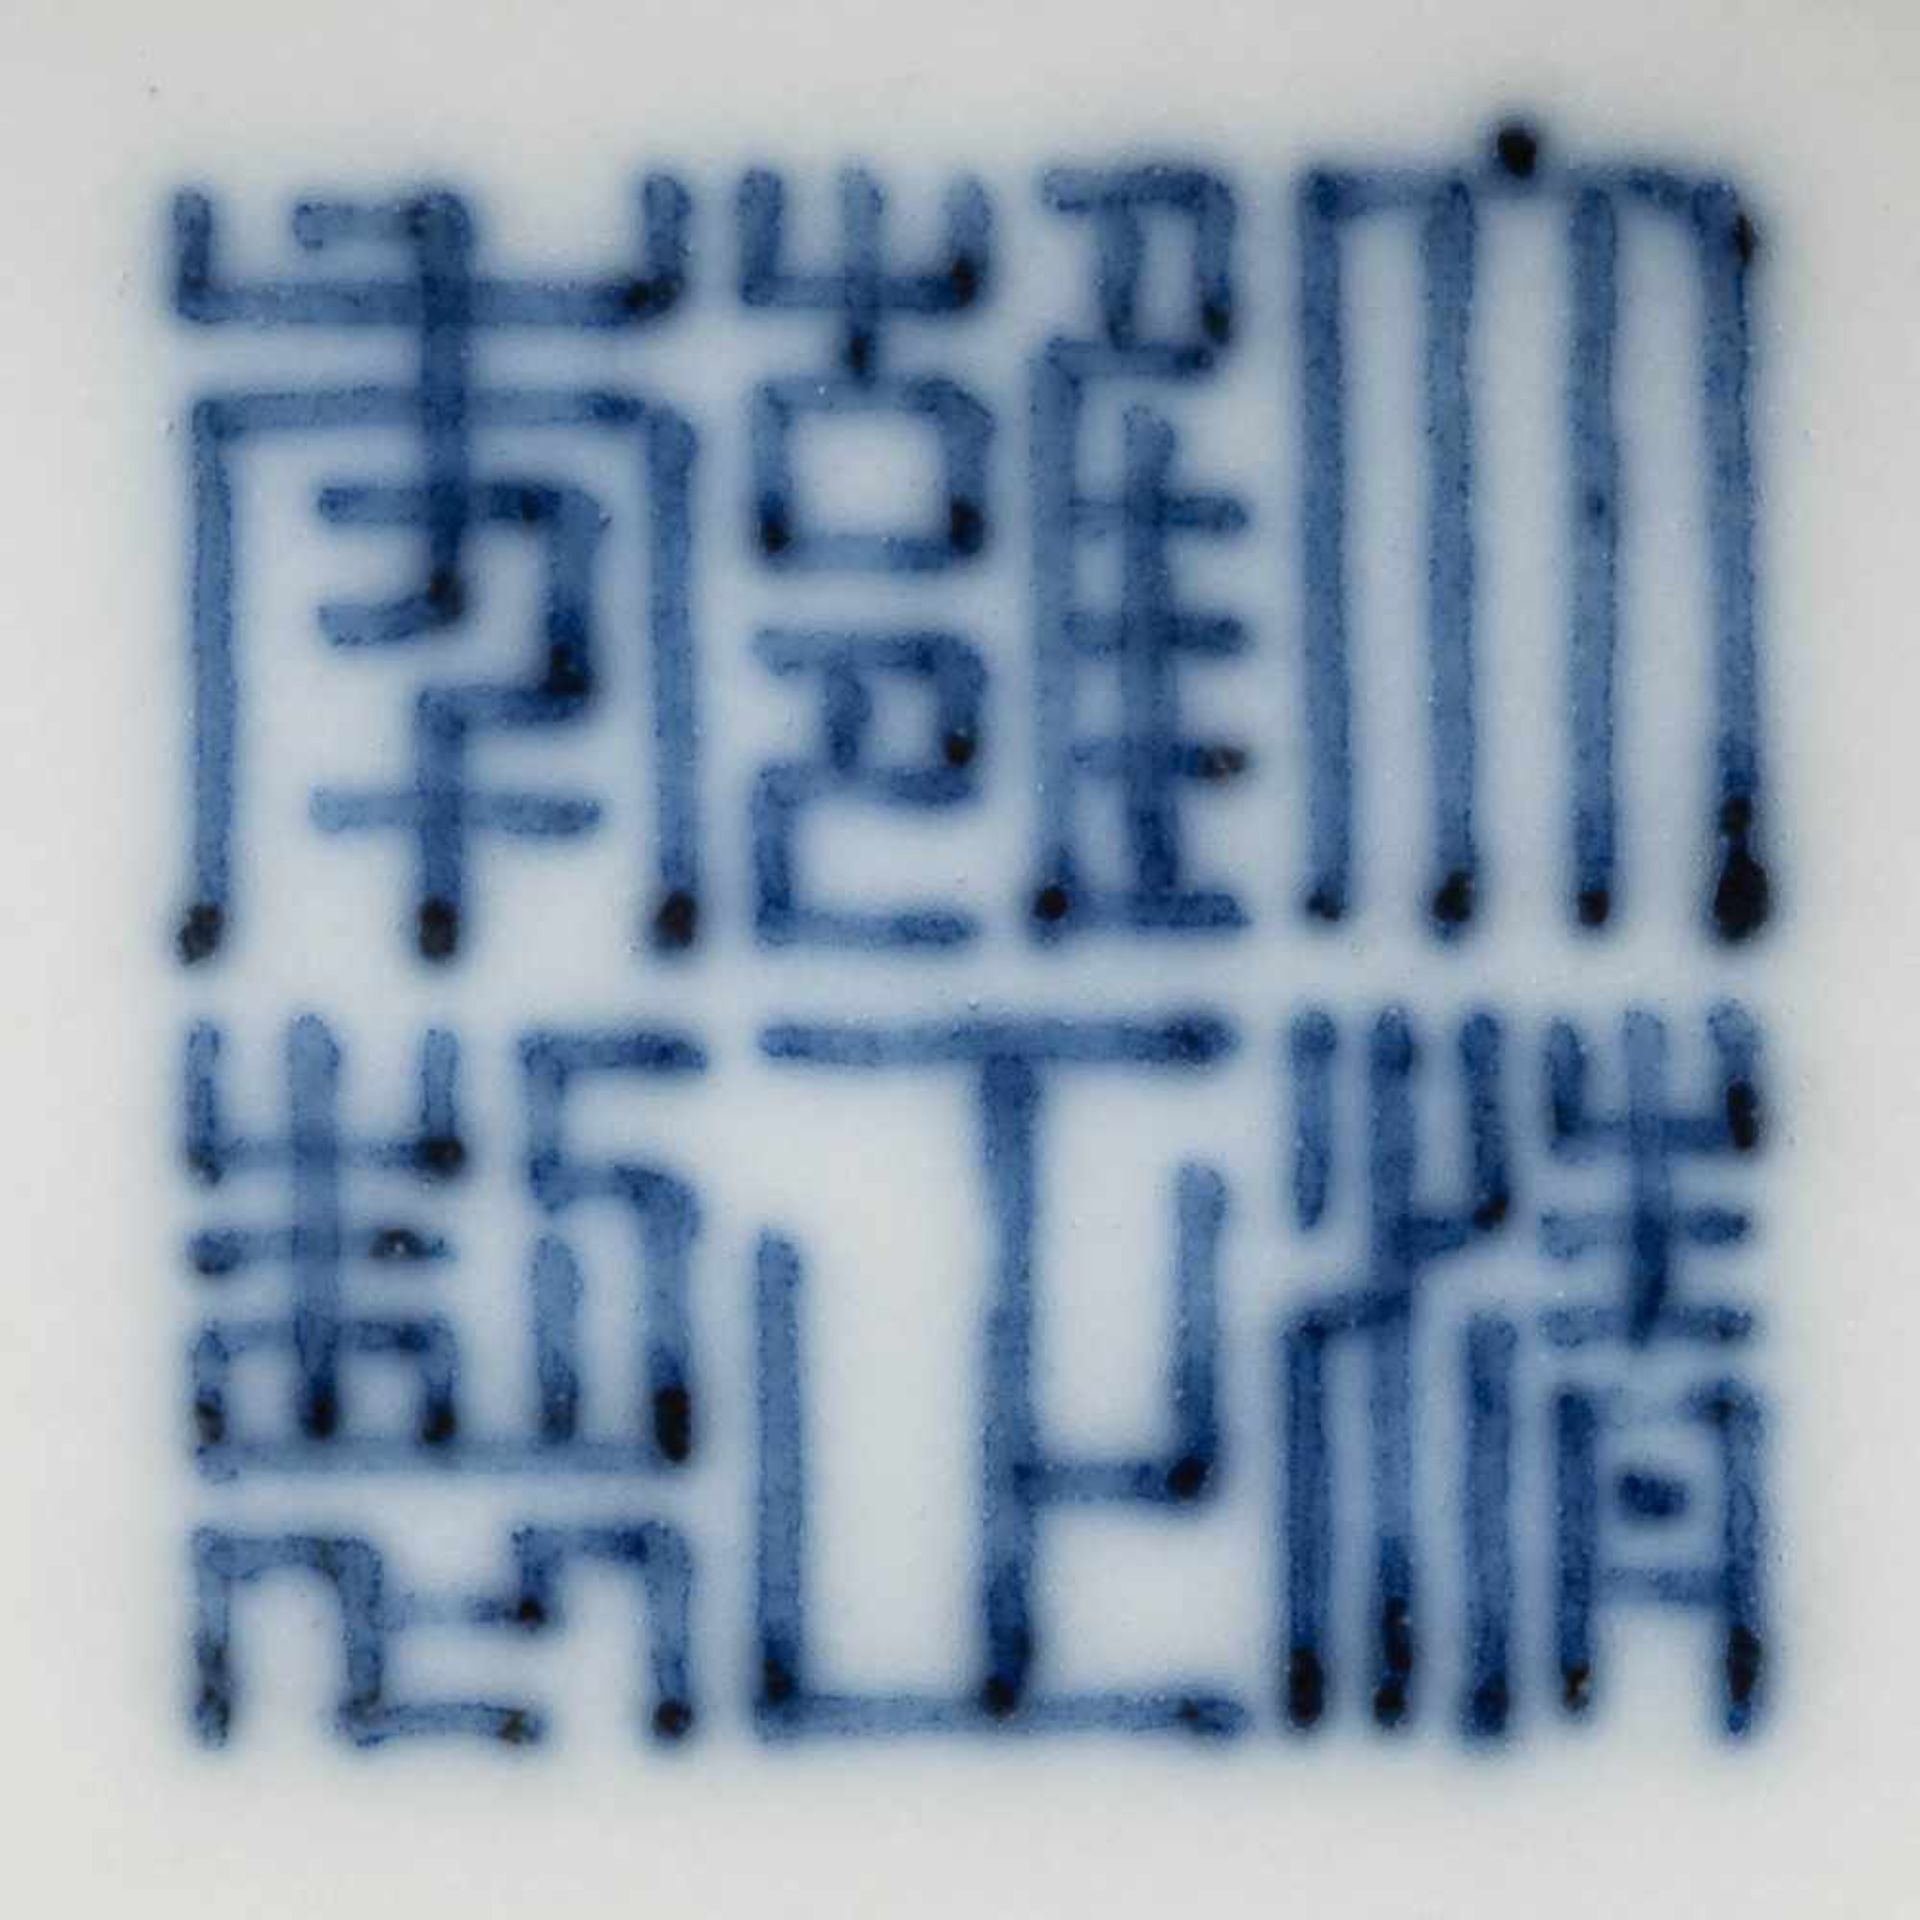 KANNE China, 18./19. Jh. Porzellan, unterglasurblaue Malerei. H. 21,5 cm. Im Boden Sechs-Zeichen- - Bild 2 aus 2